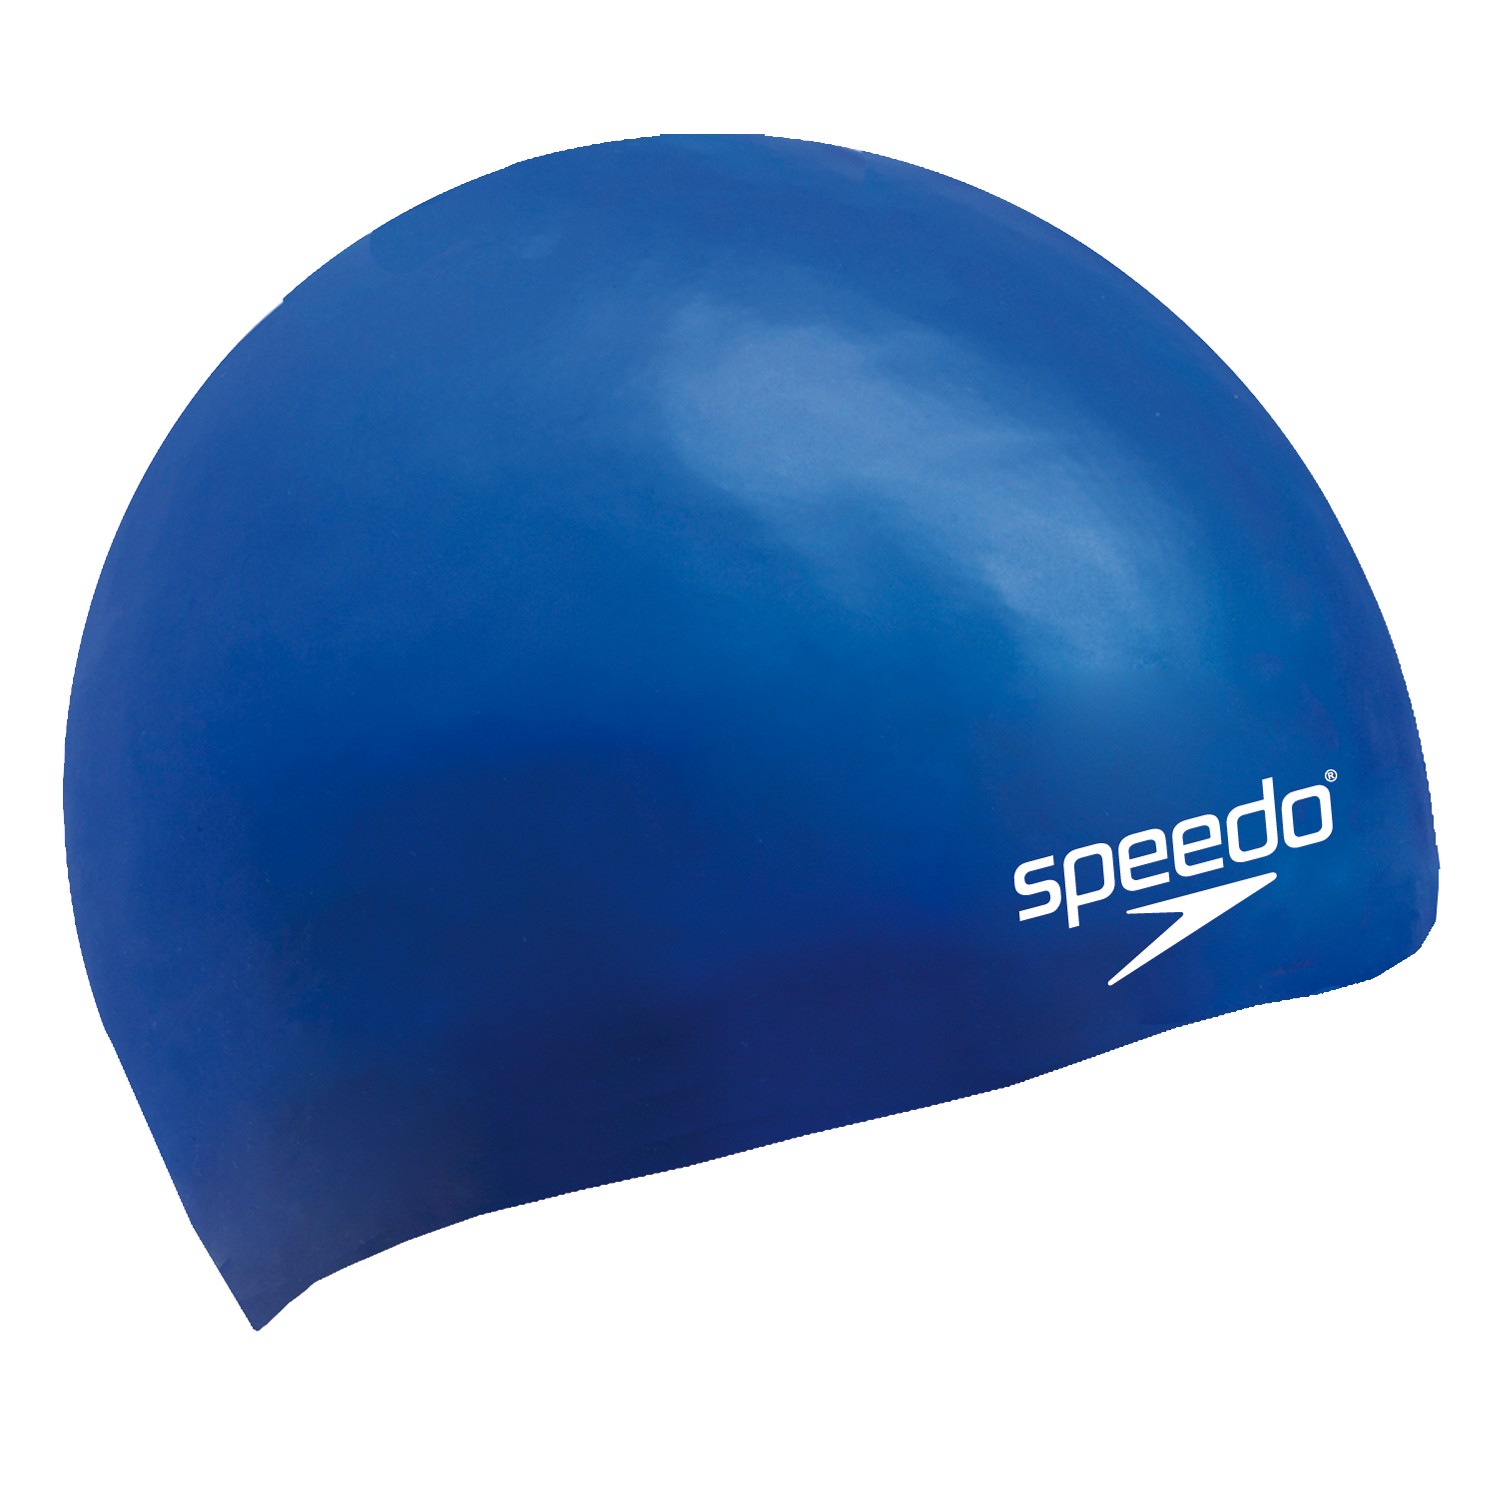 Speedo Moulded Cap Blue Swim Caps Swimwear Accessories Swim